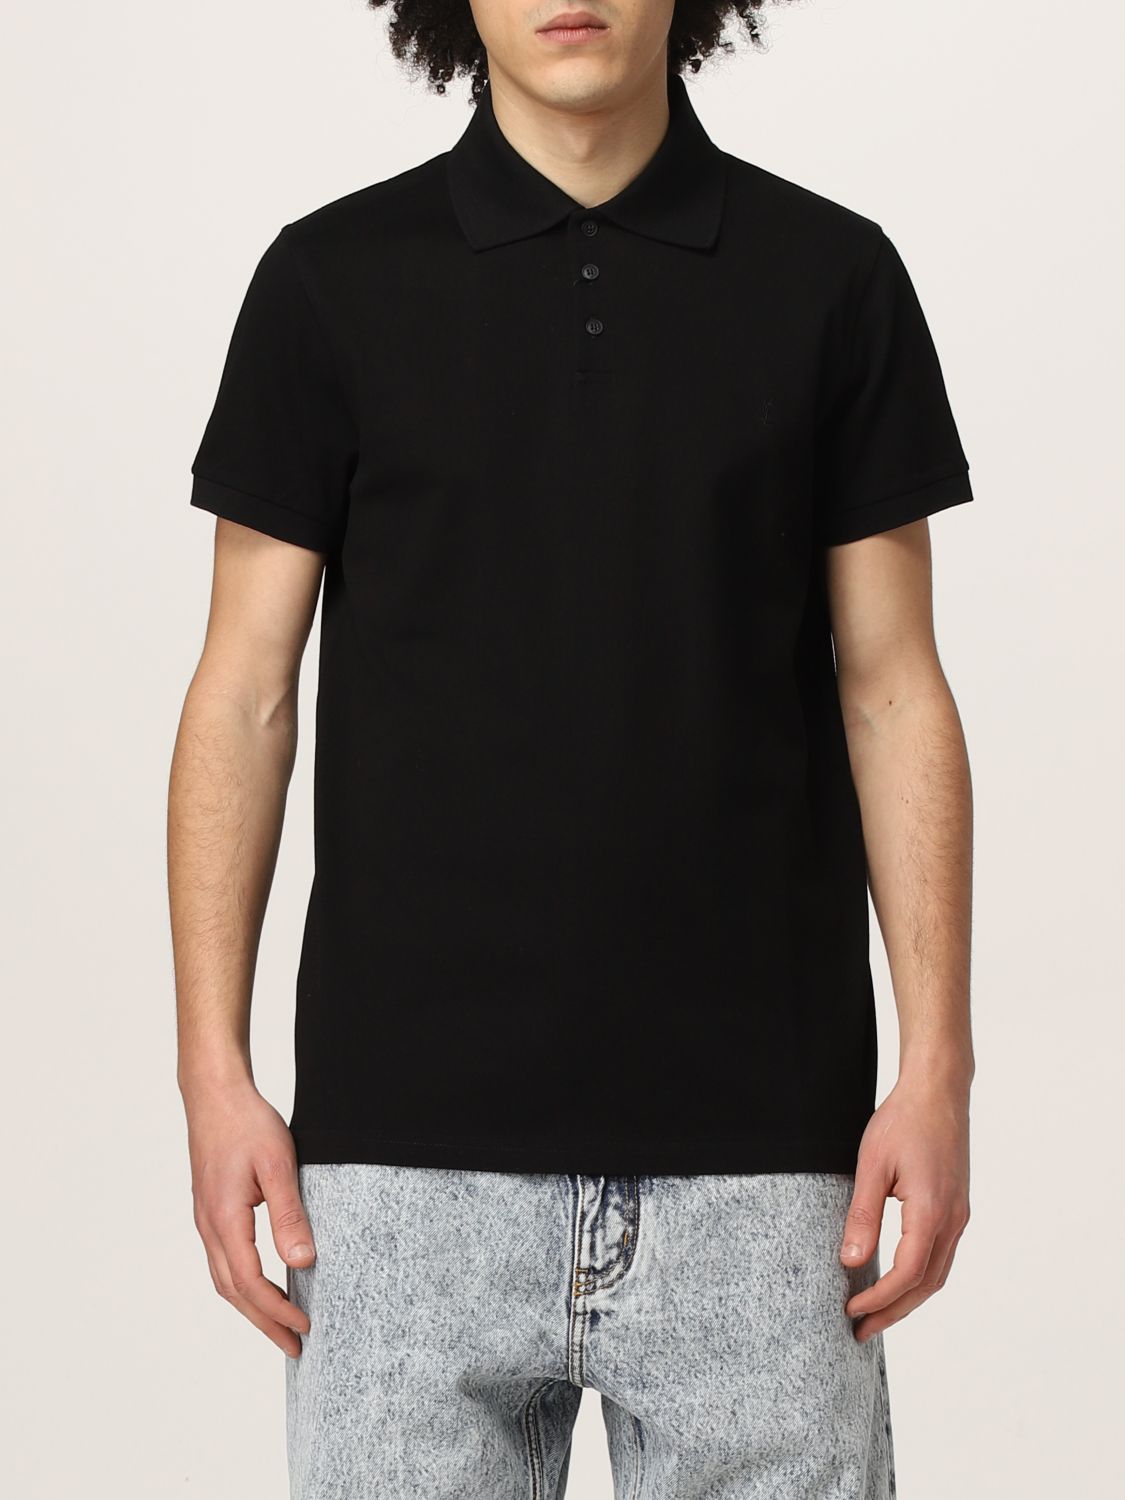 Polo shirt Saint Laurent: Saint Laurent piqué cotton basic polo t-shirt black 1